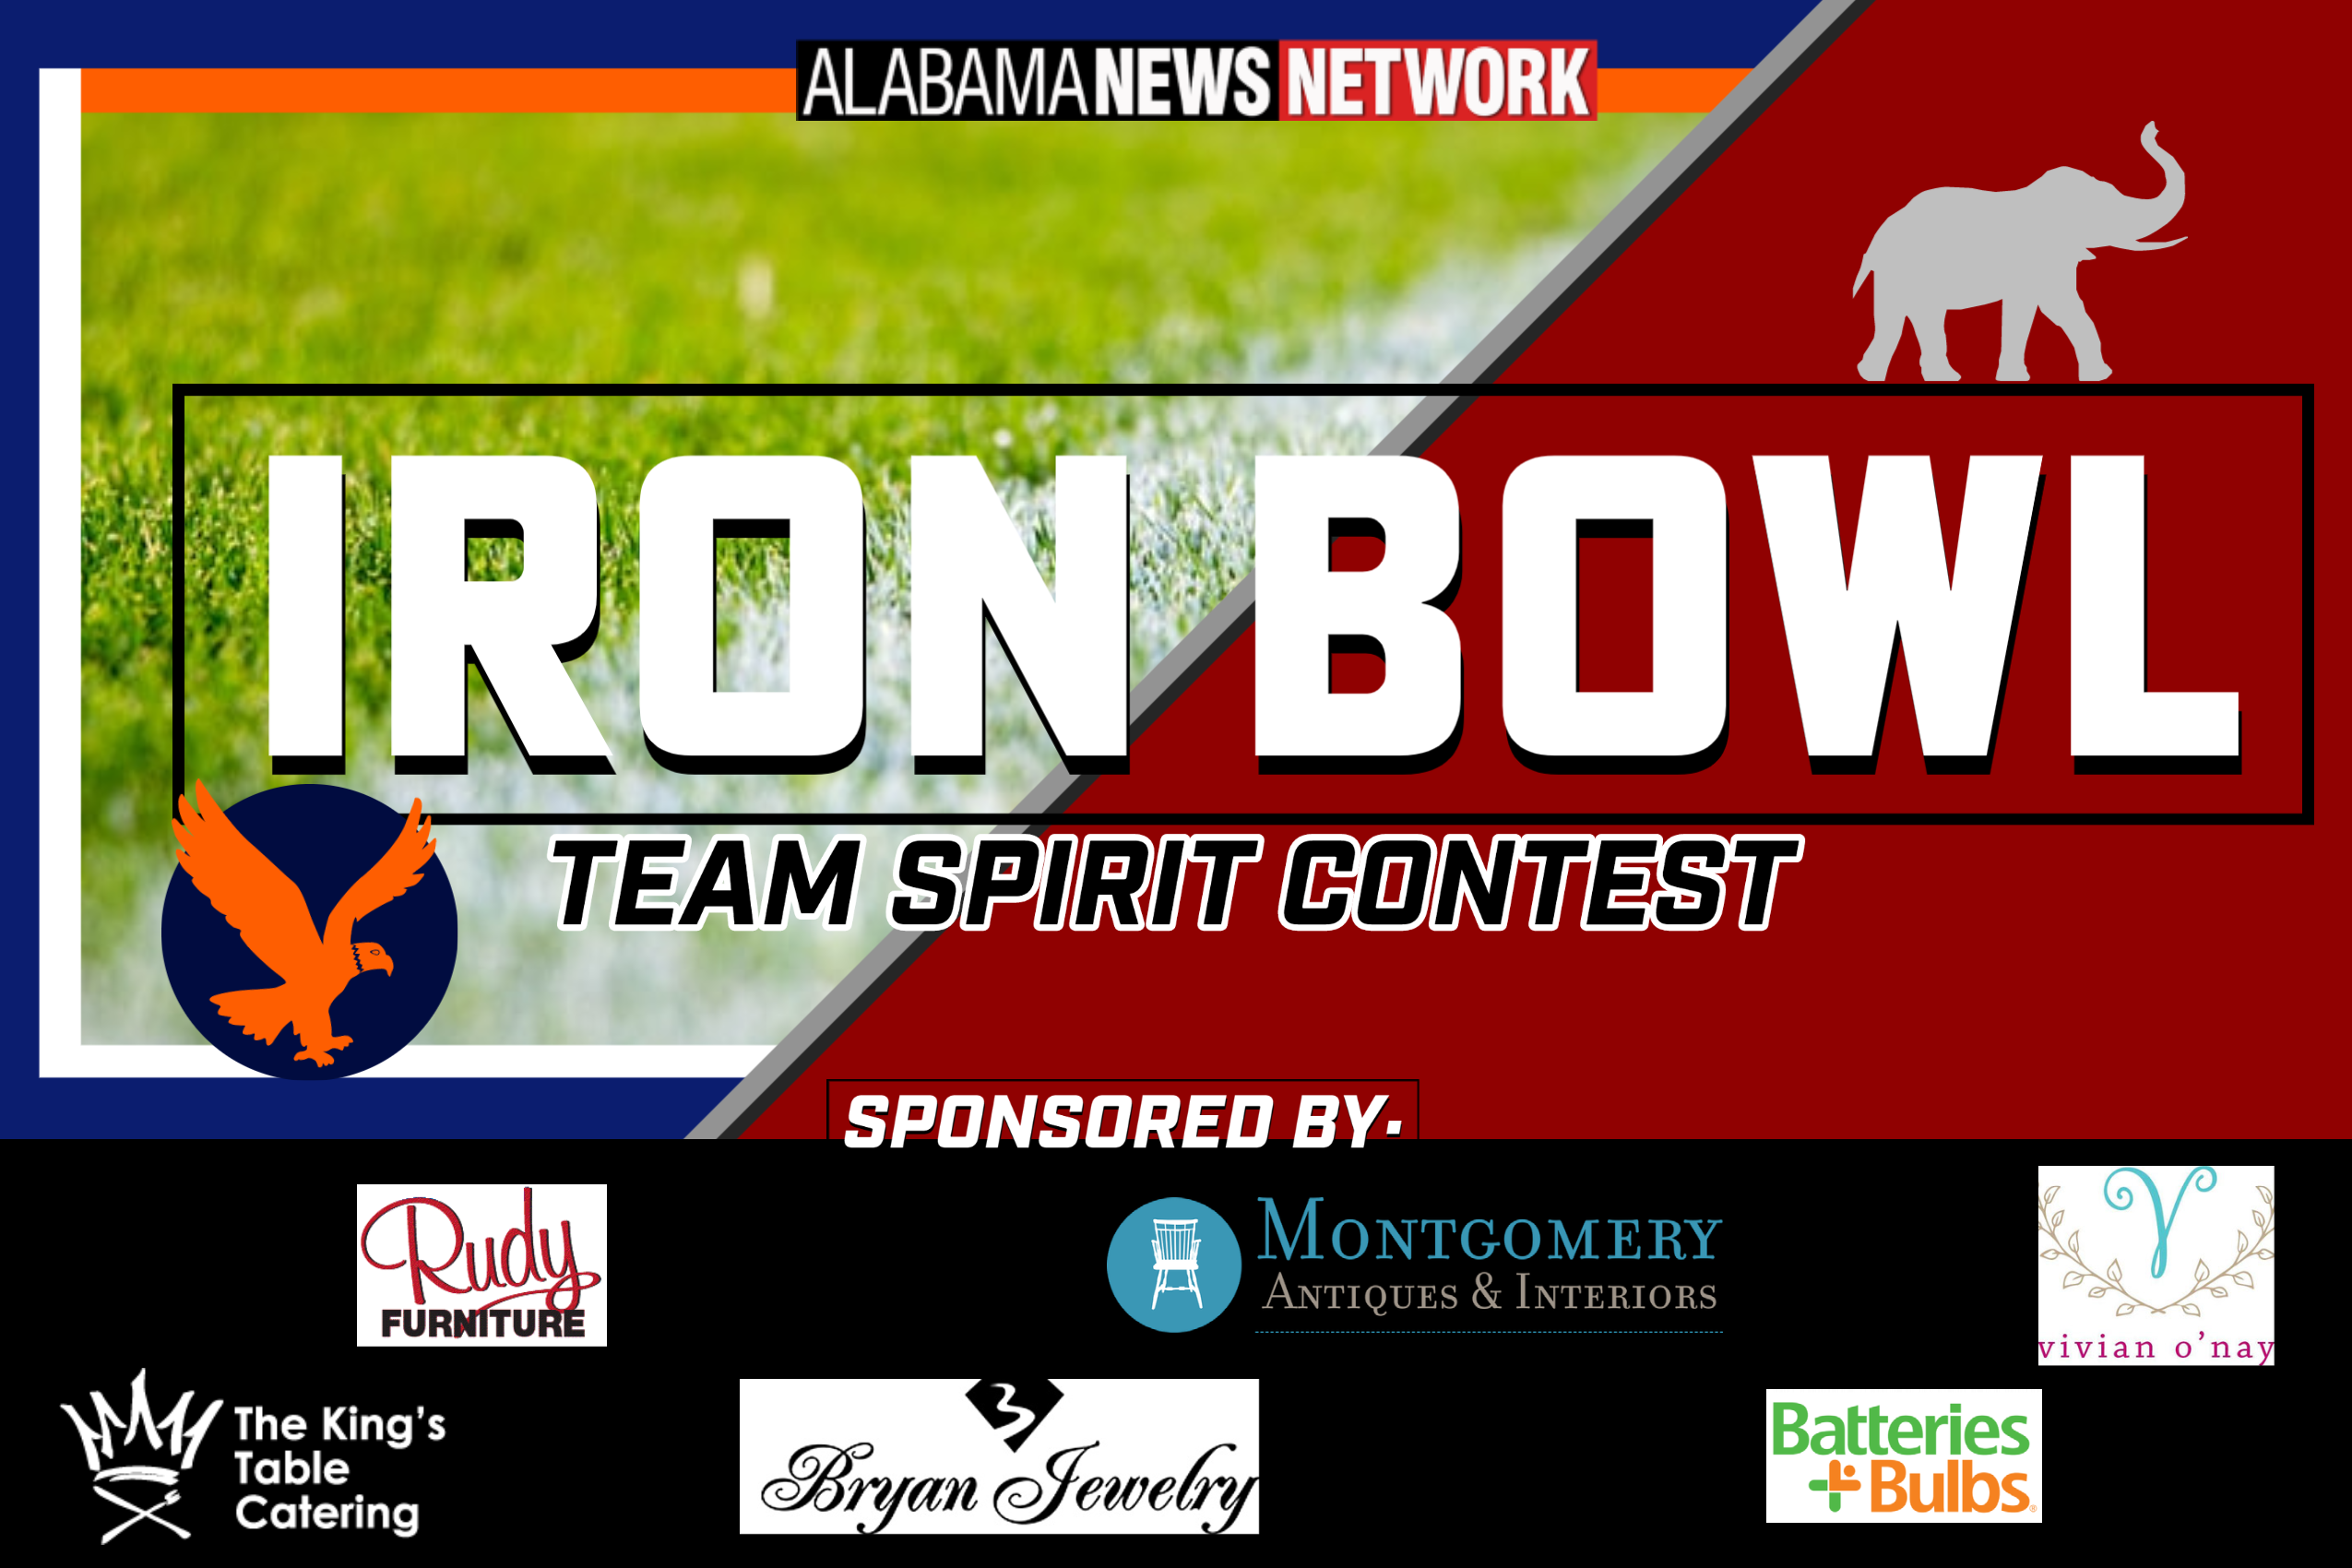 Iron Bowl Team Spirit Contest Alabama News